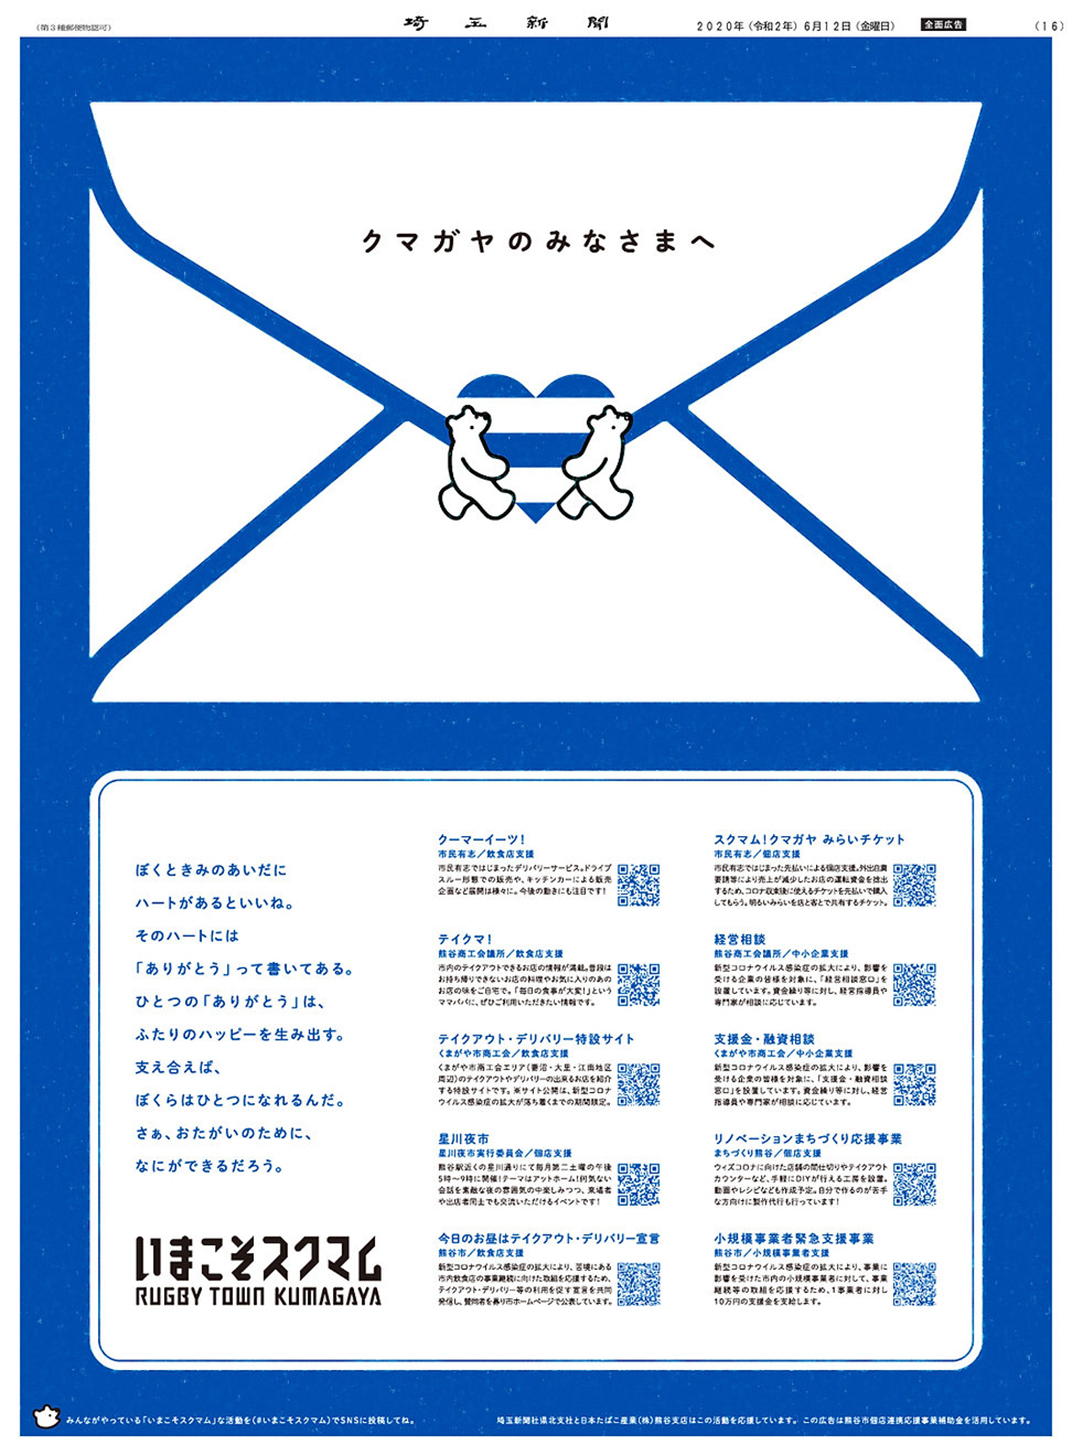 插画风格熊谷vi设计 日本 北京 上海 成都 武汉 杭州 广州 澳门 logo设计 vi设计 空间设计